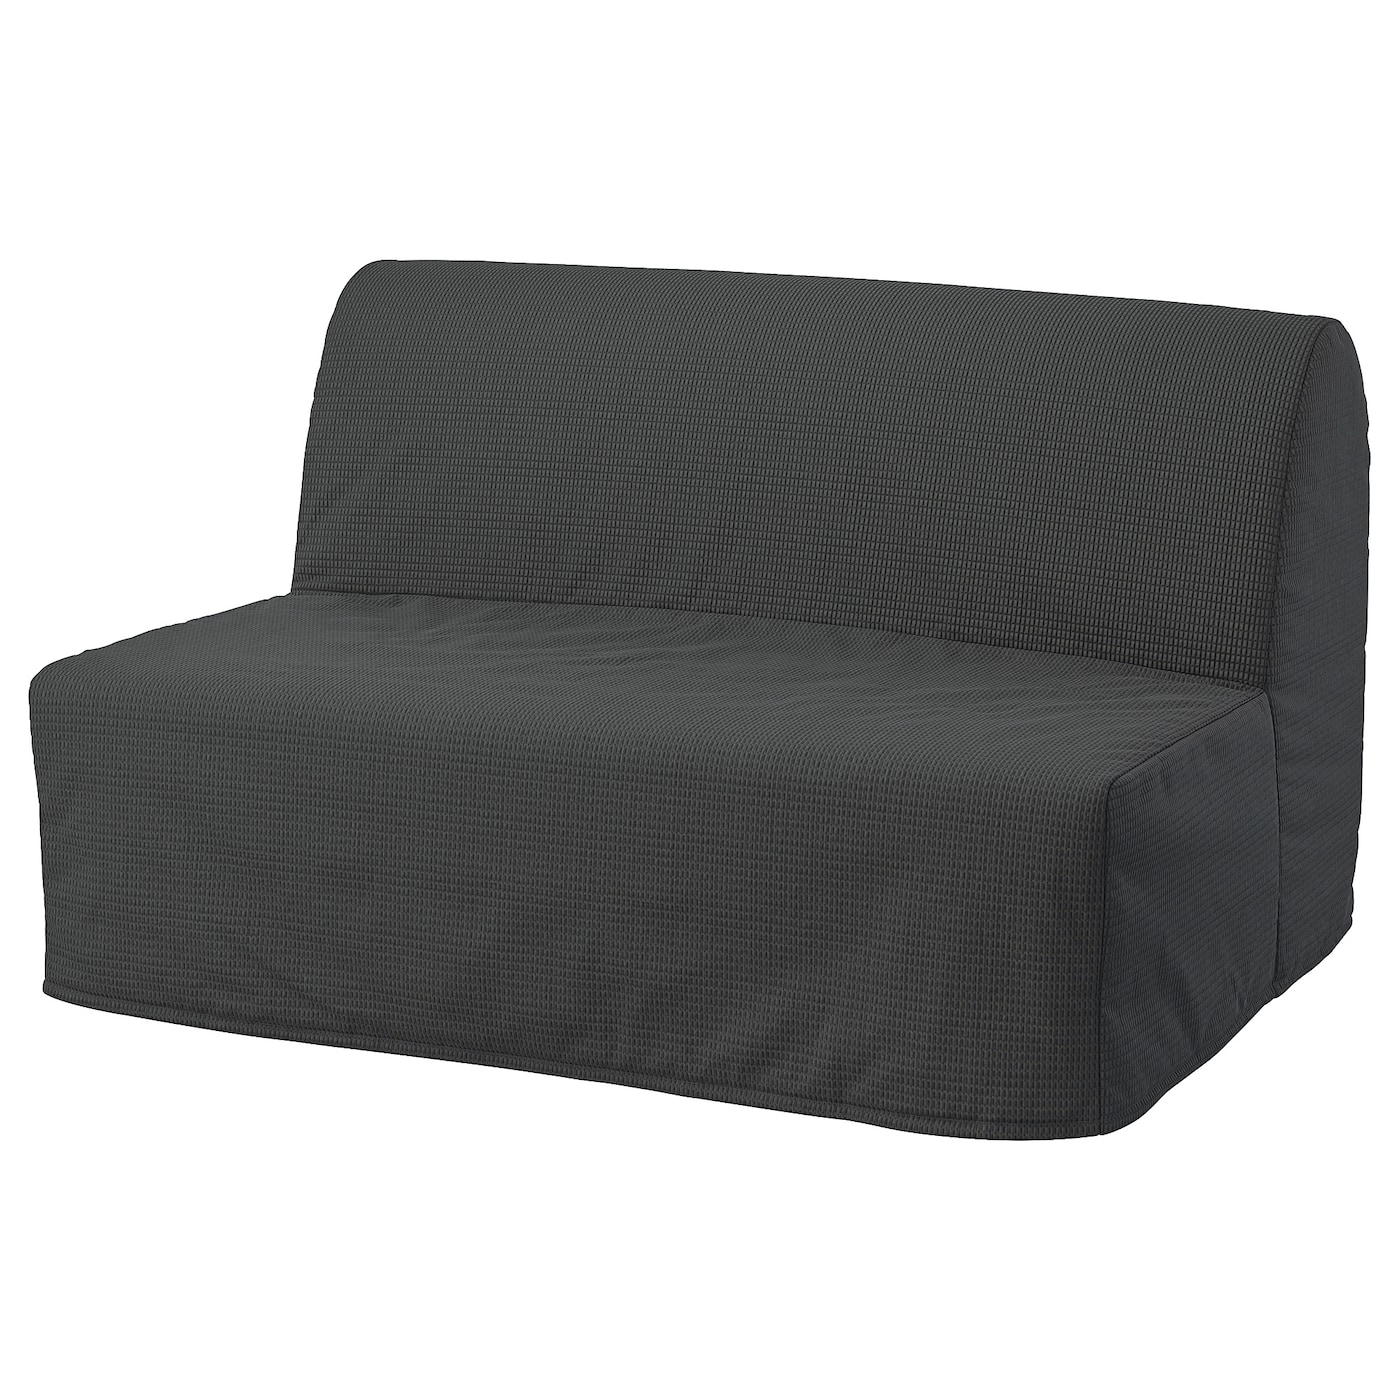 ЛИКСЕЛЕ ЛЕВОС 2 дивана-кровати с откидной спинкой, Вансбро темно-серый LYCKSELE LÖVÅS IKEA матрас для дивана первый мебельный винсен 3